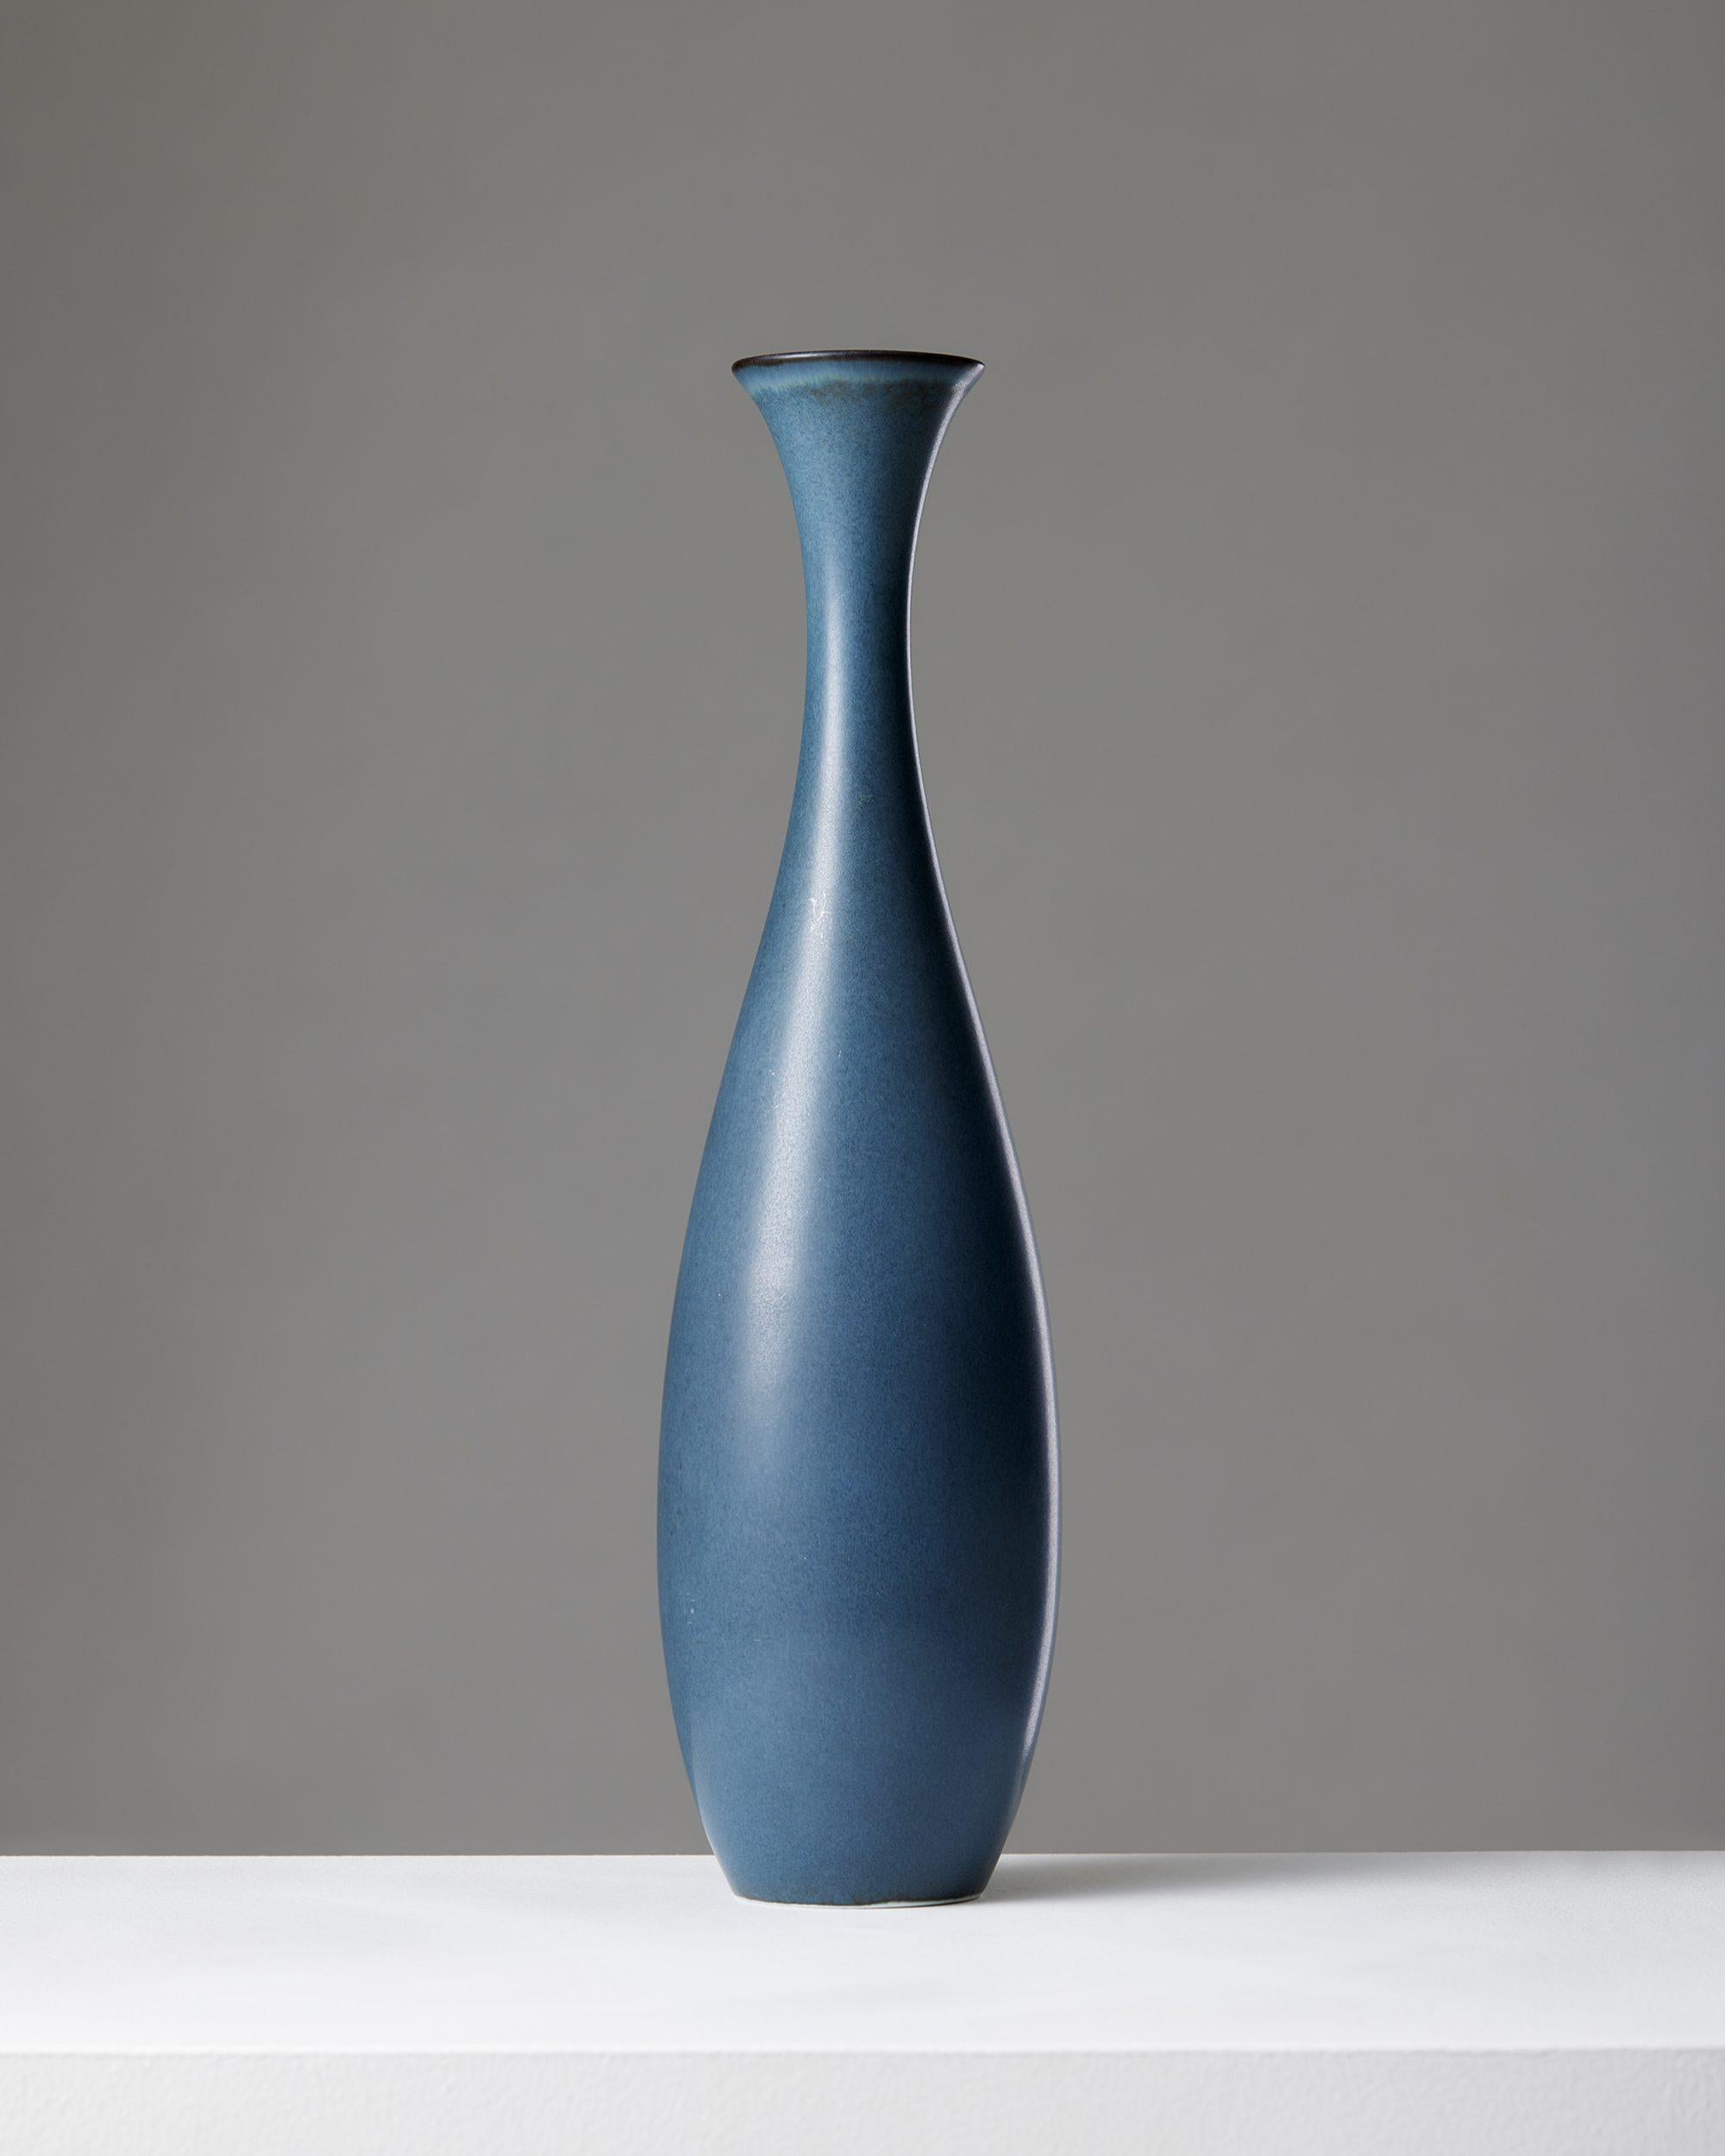 Vase, entworfen von Carl-Harry Stålhane für Rörstrand,
Schweden, 1950er Jahre.

Steingut.

Unterschrieben.
